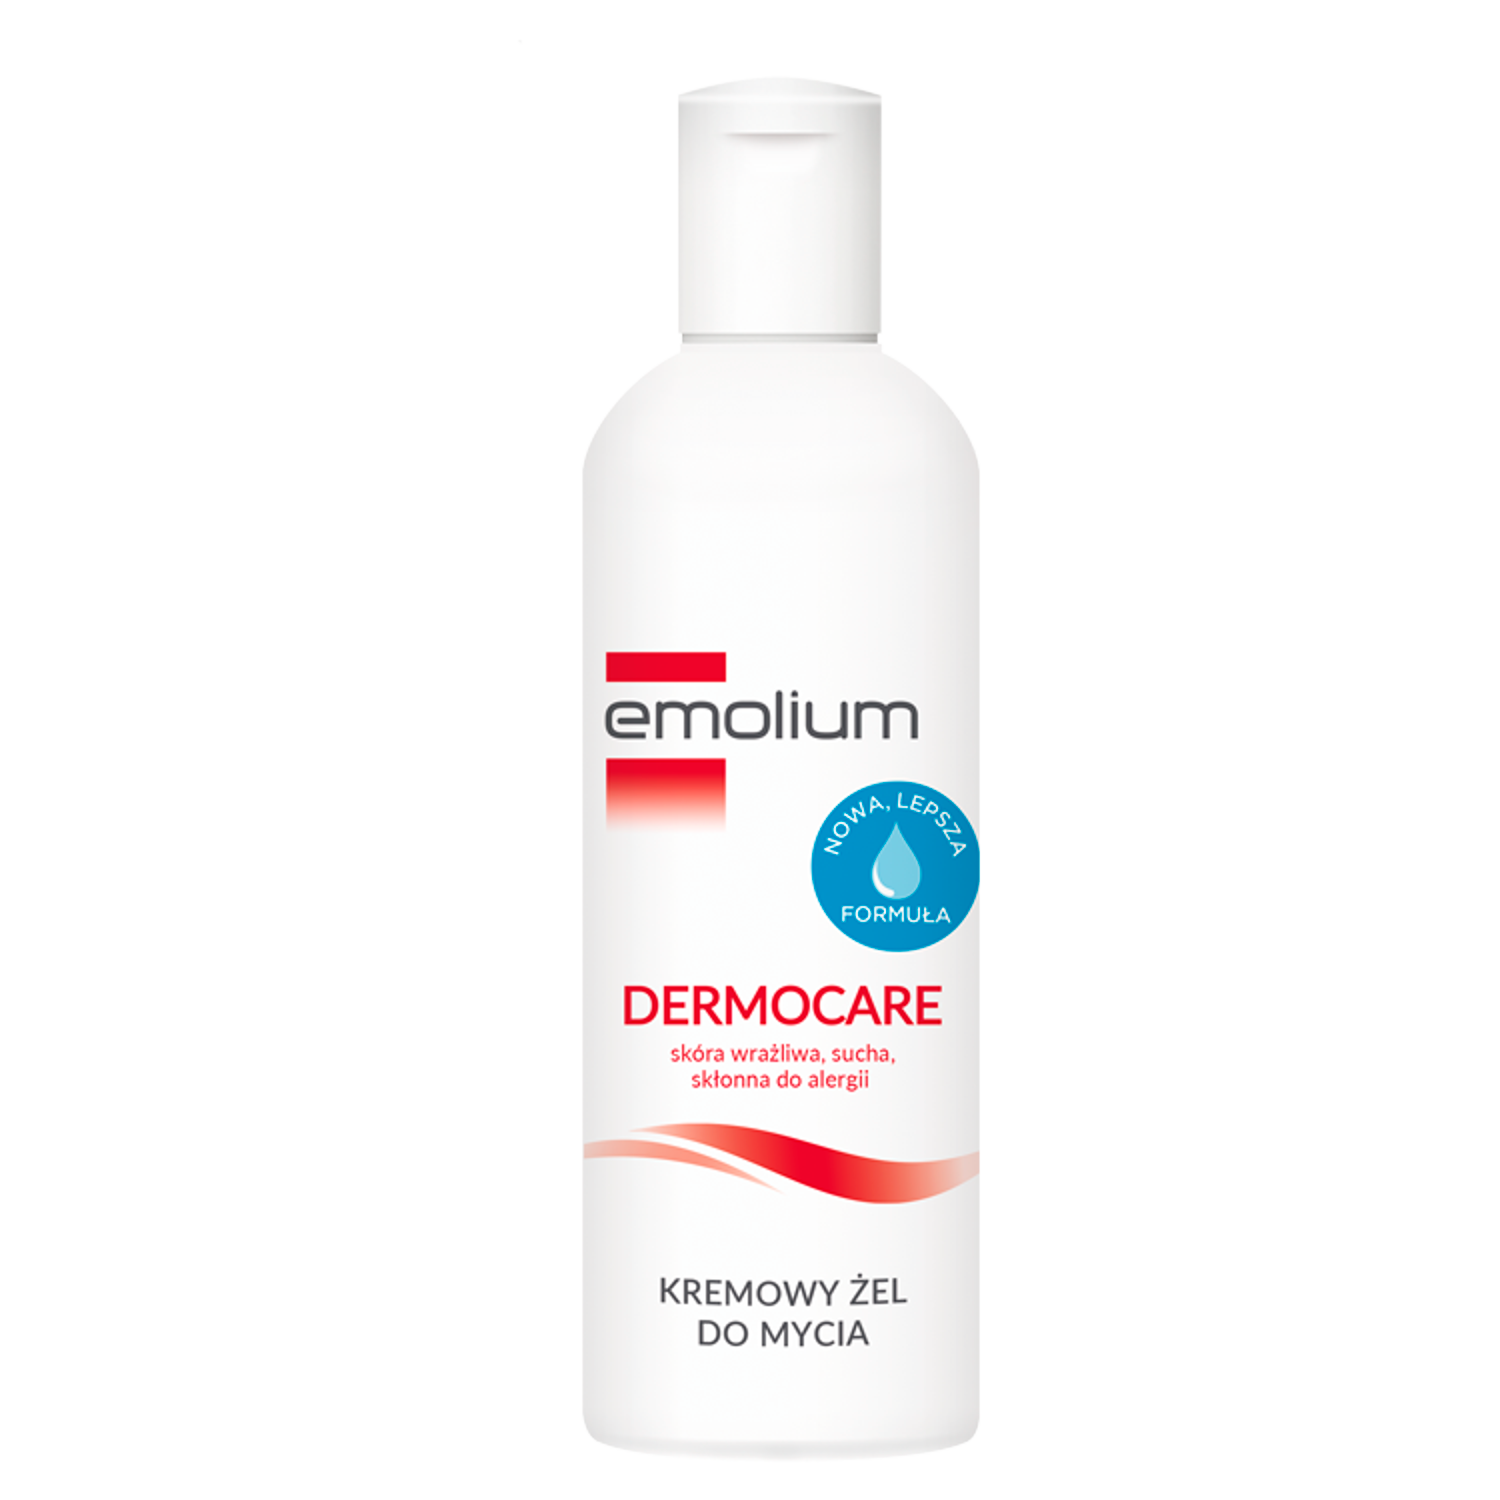 Emolium Dermocare крем-гель для мытья тела, 200 мл